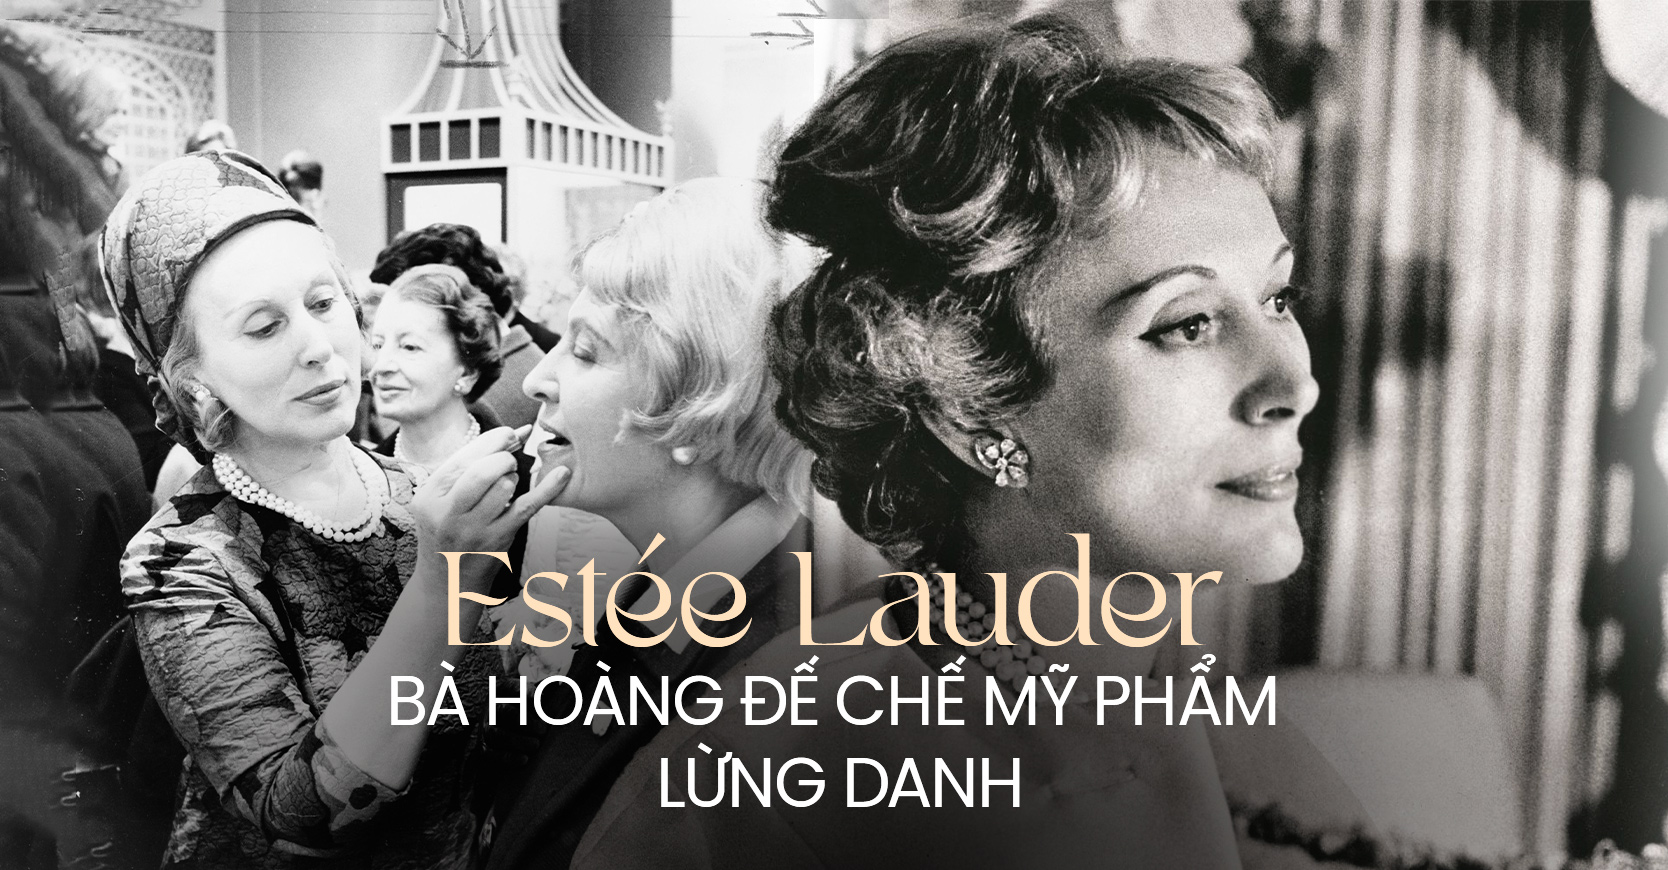 Bà hoàng mỹ phẩm Estée Lauder: Từ căn bếp chật hẹp đến đế chế tỷ USD, qua bao nhiêu năm vẫn khiến thế giới khâm phục bởi chiến lược quảng cáo tài tình - Ảnh 1.